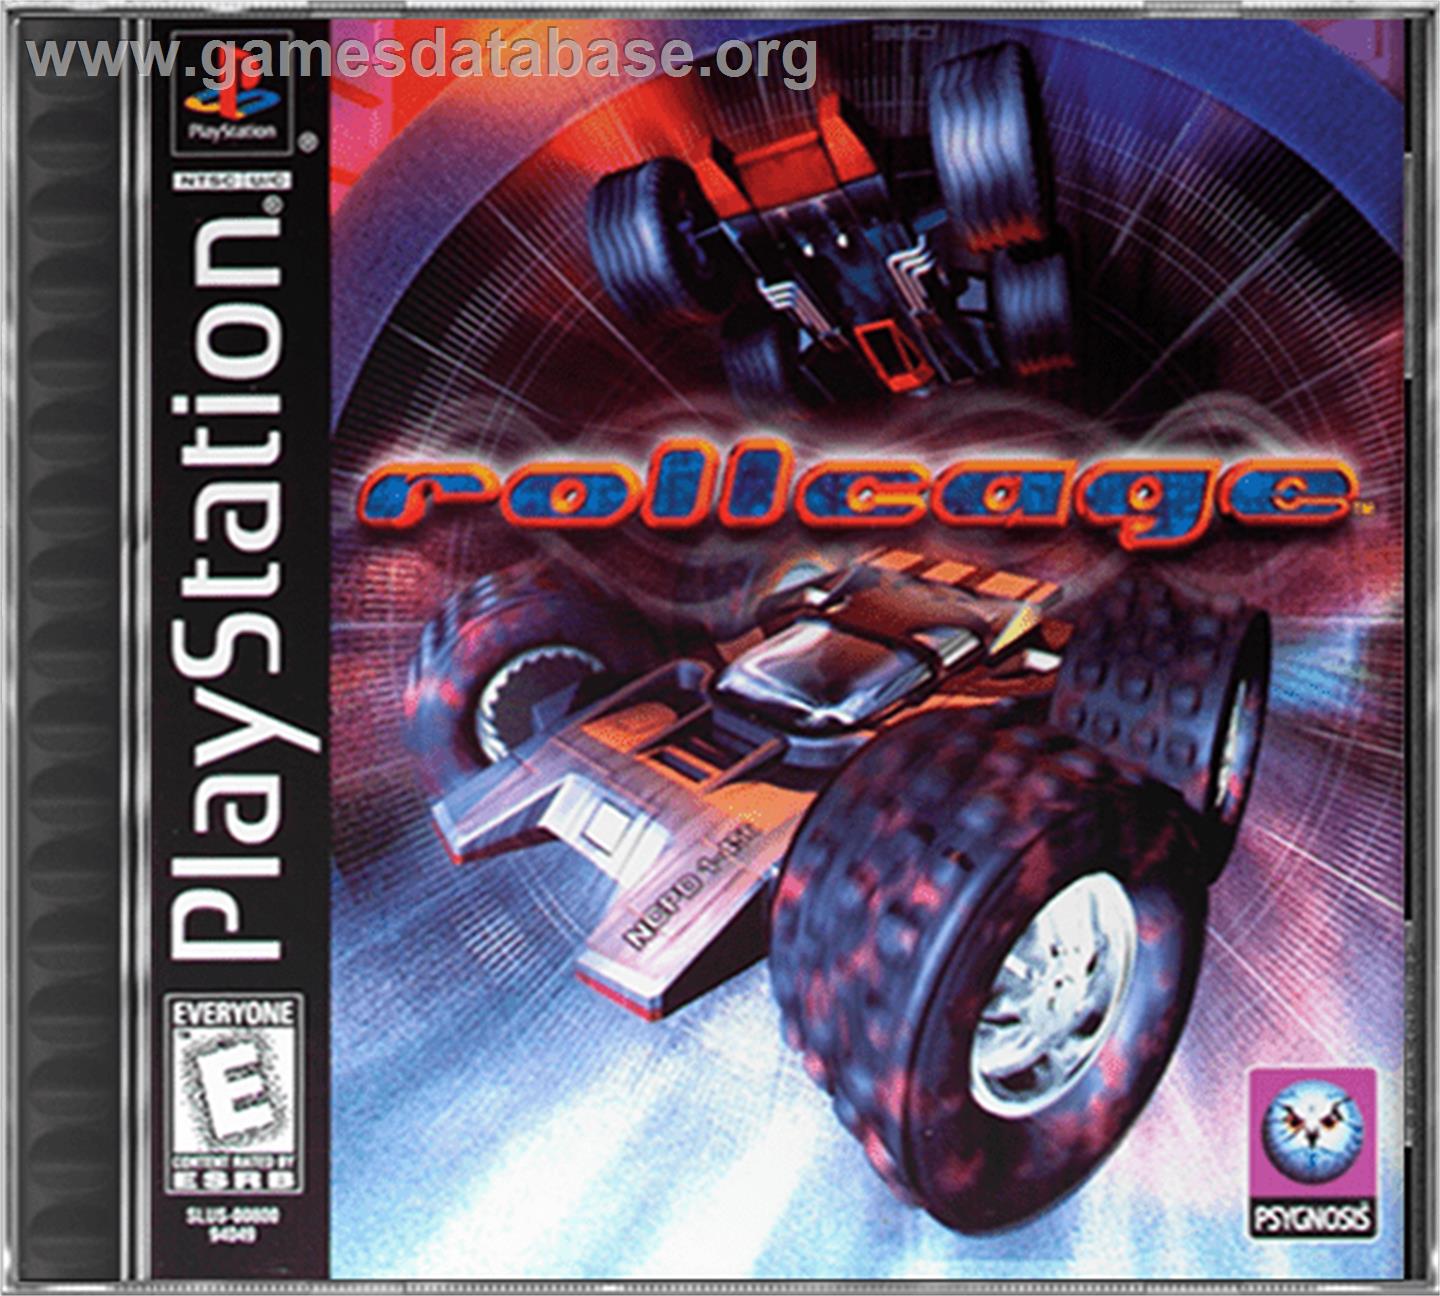 Rollcage - Sony Playstation - Artwork - Box